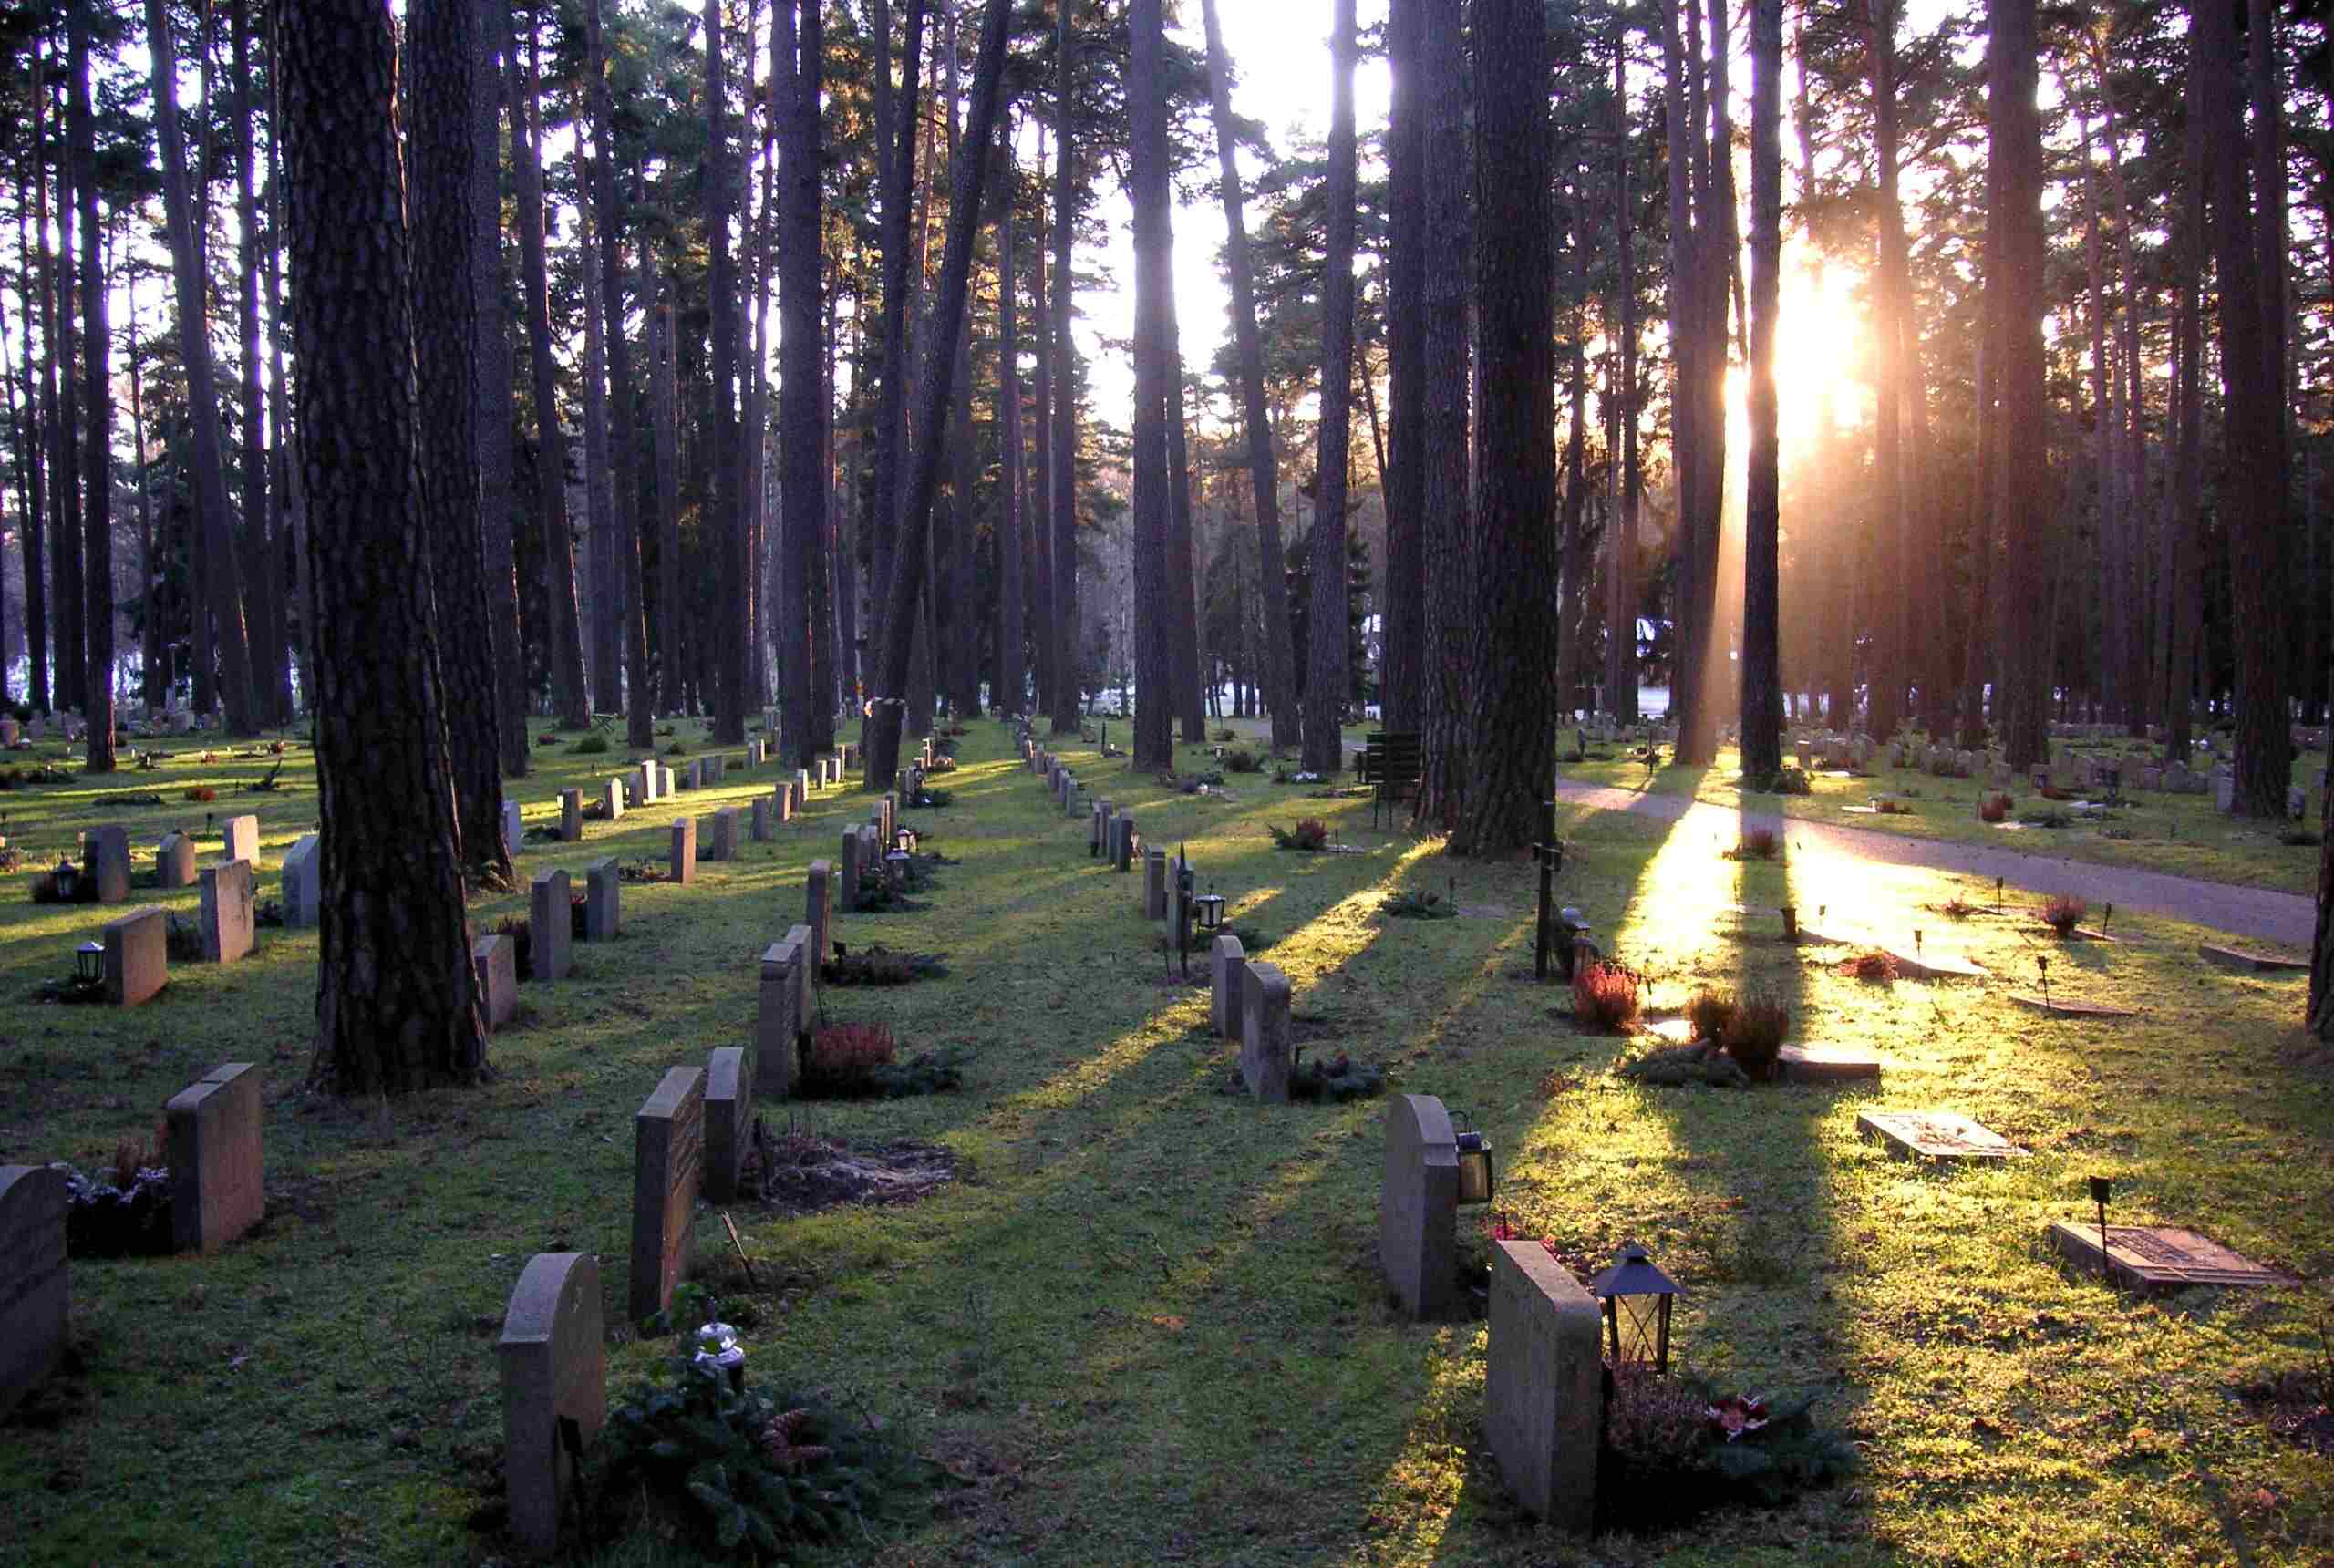 Skogskyrkogården: il cimitero del bosco di Stoccolma